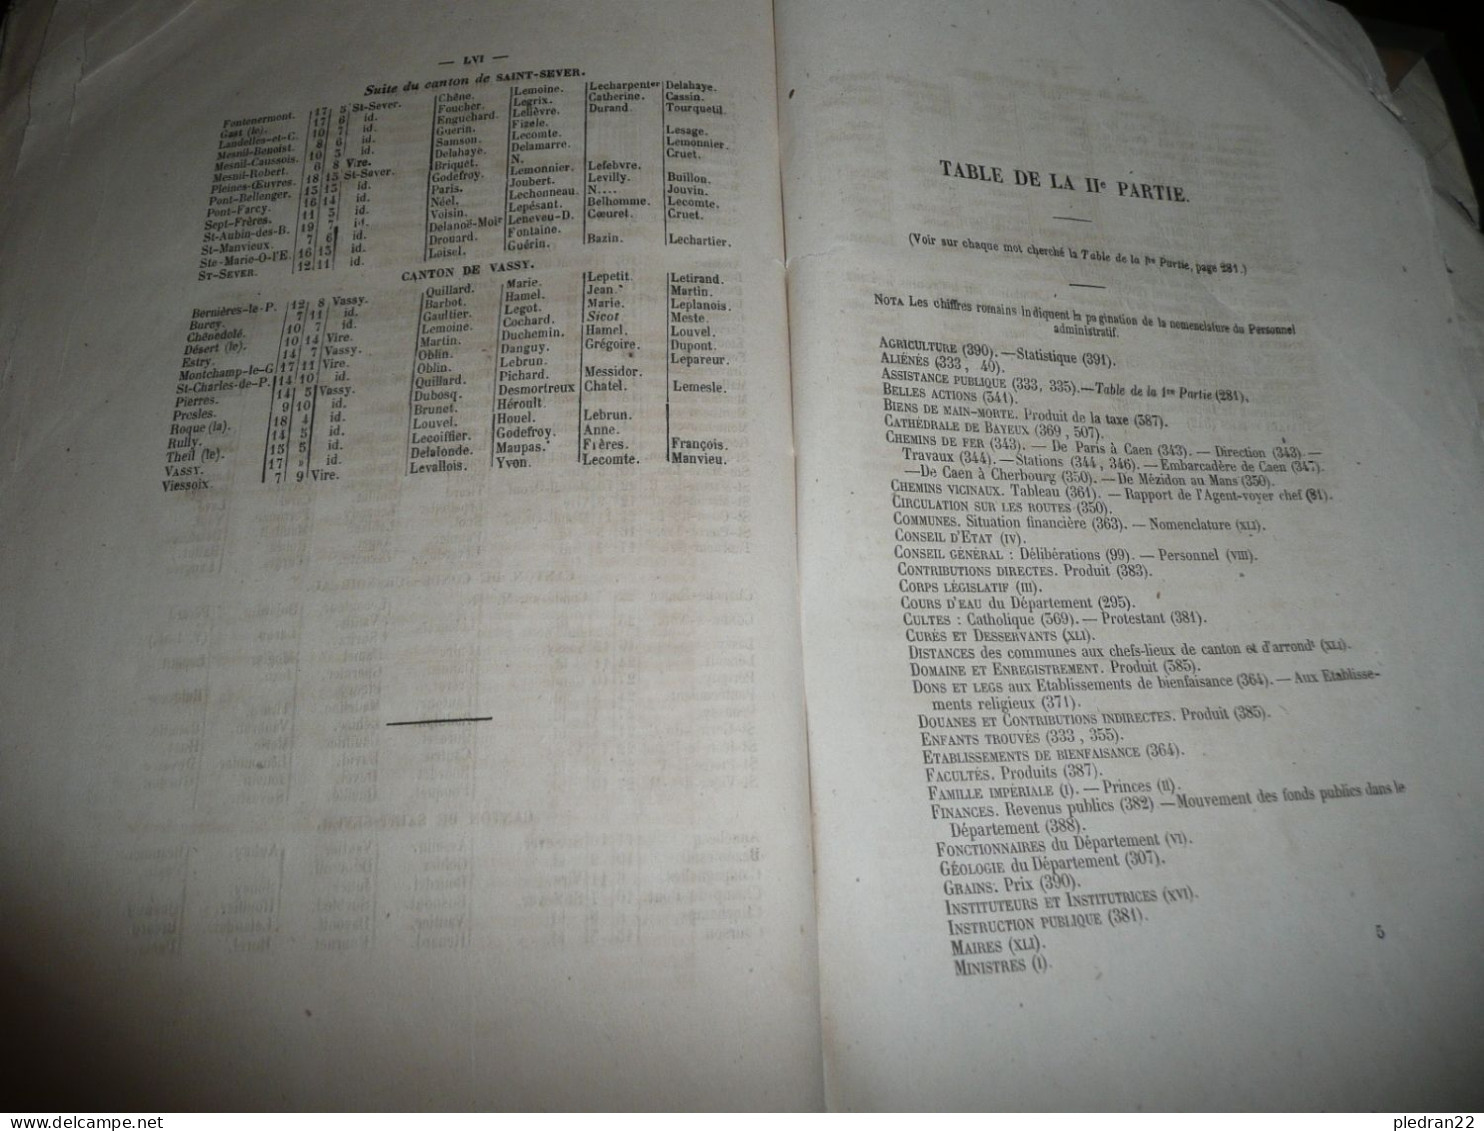 NORMANDIE ANNUAIRE DU DEPARTEMENT DU CALVADOS POUR L'ANNEE 1854 PAGNY IMPRIMEUR BOUCHARD LIBRAIRE A CAEN